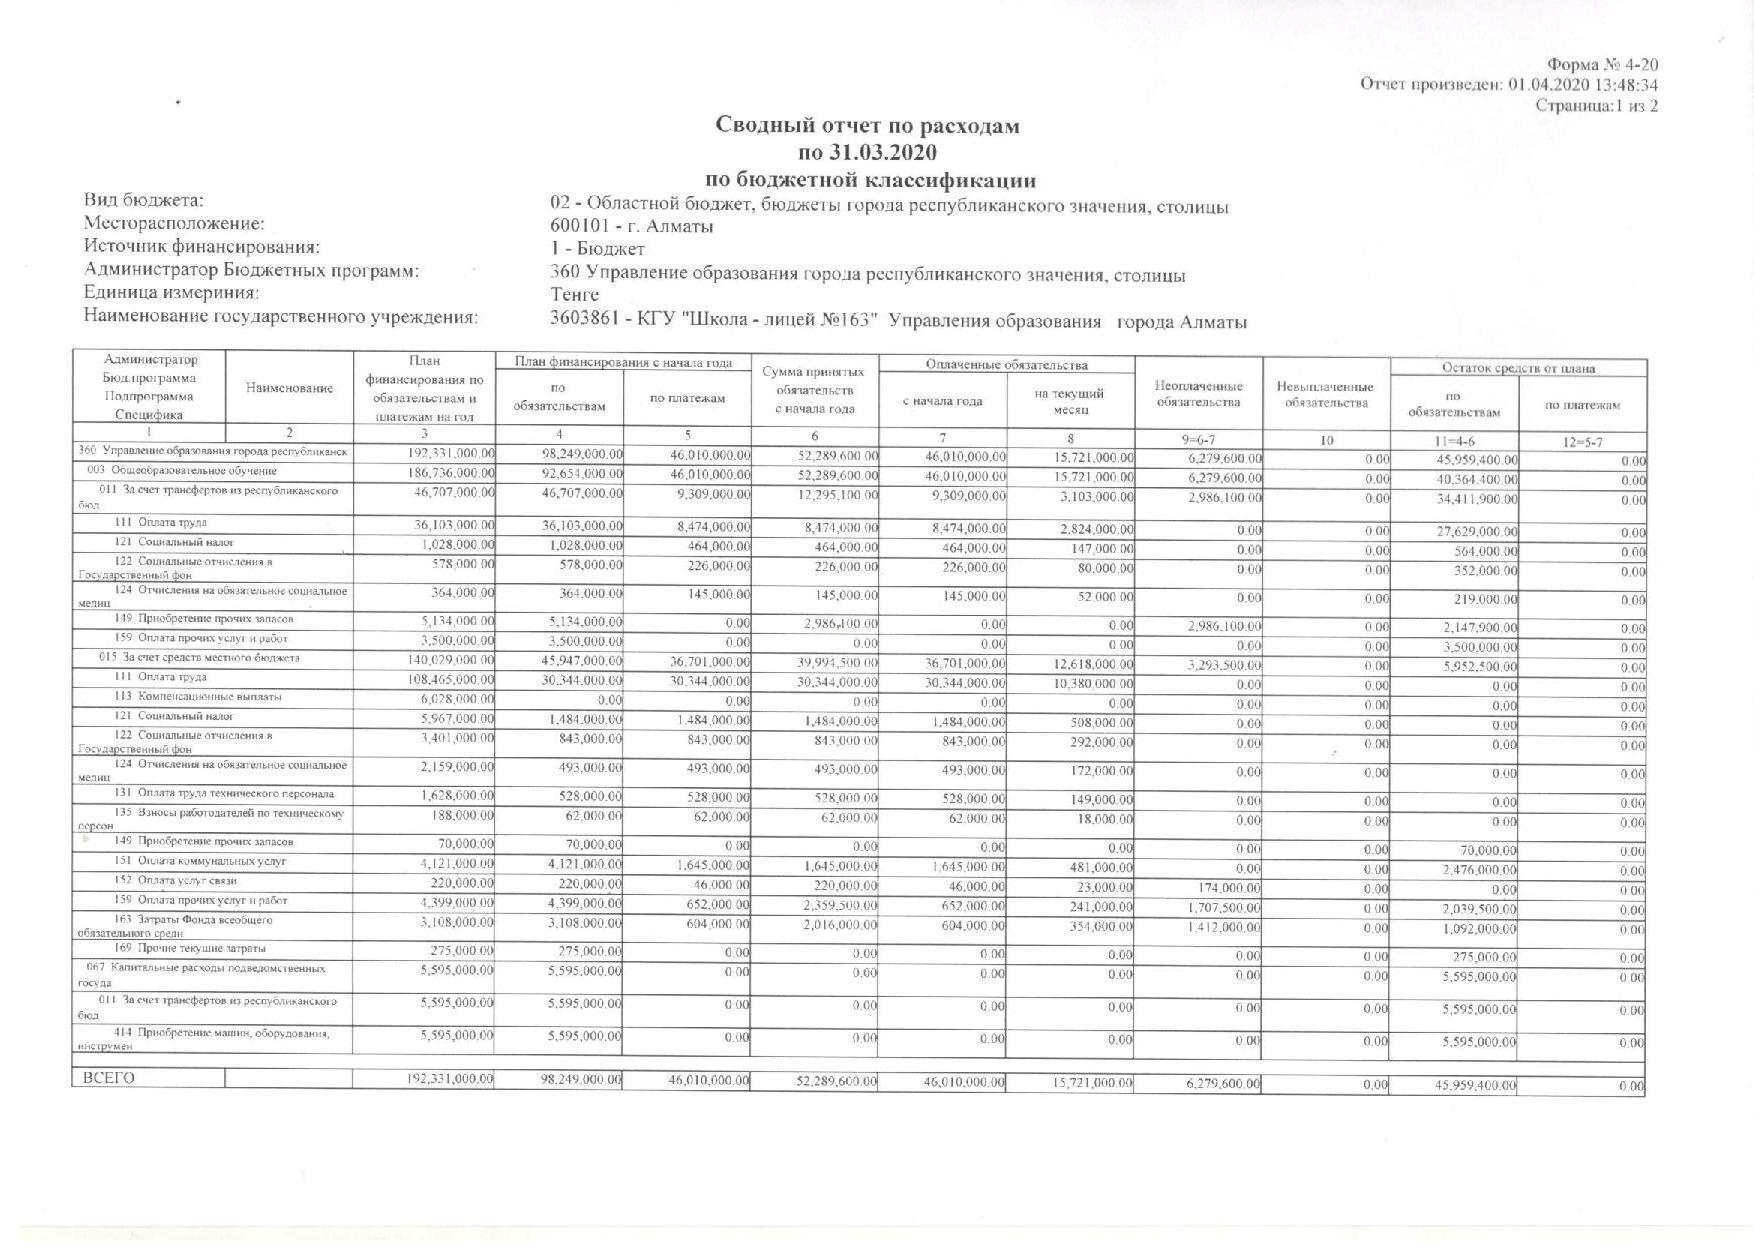 Сводный отчет по расходам по 31.03.2020 г